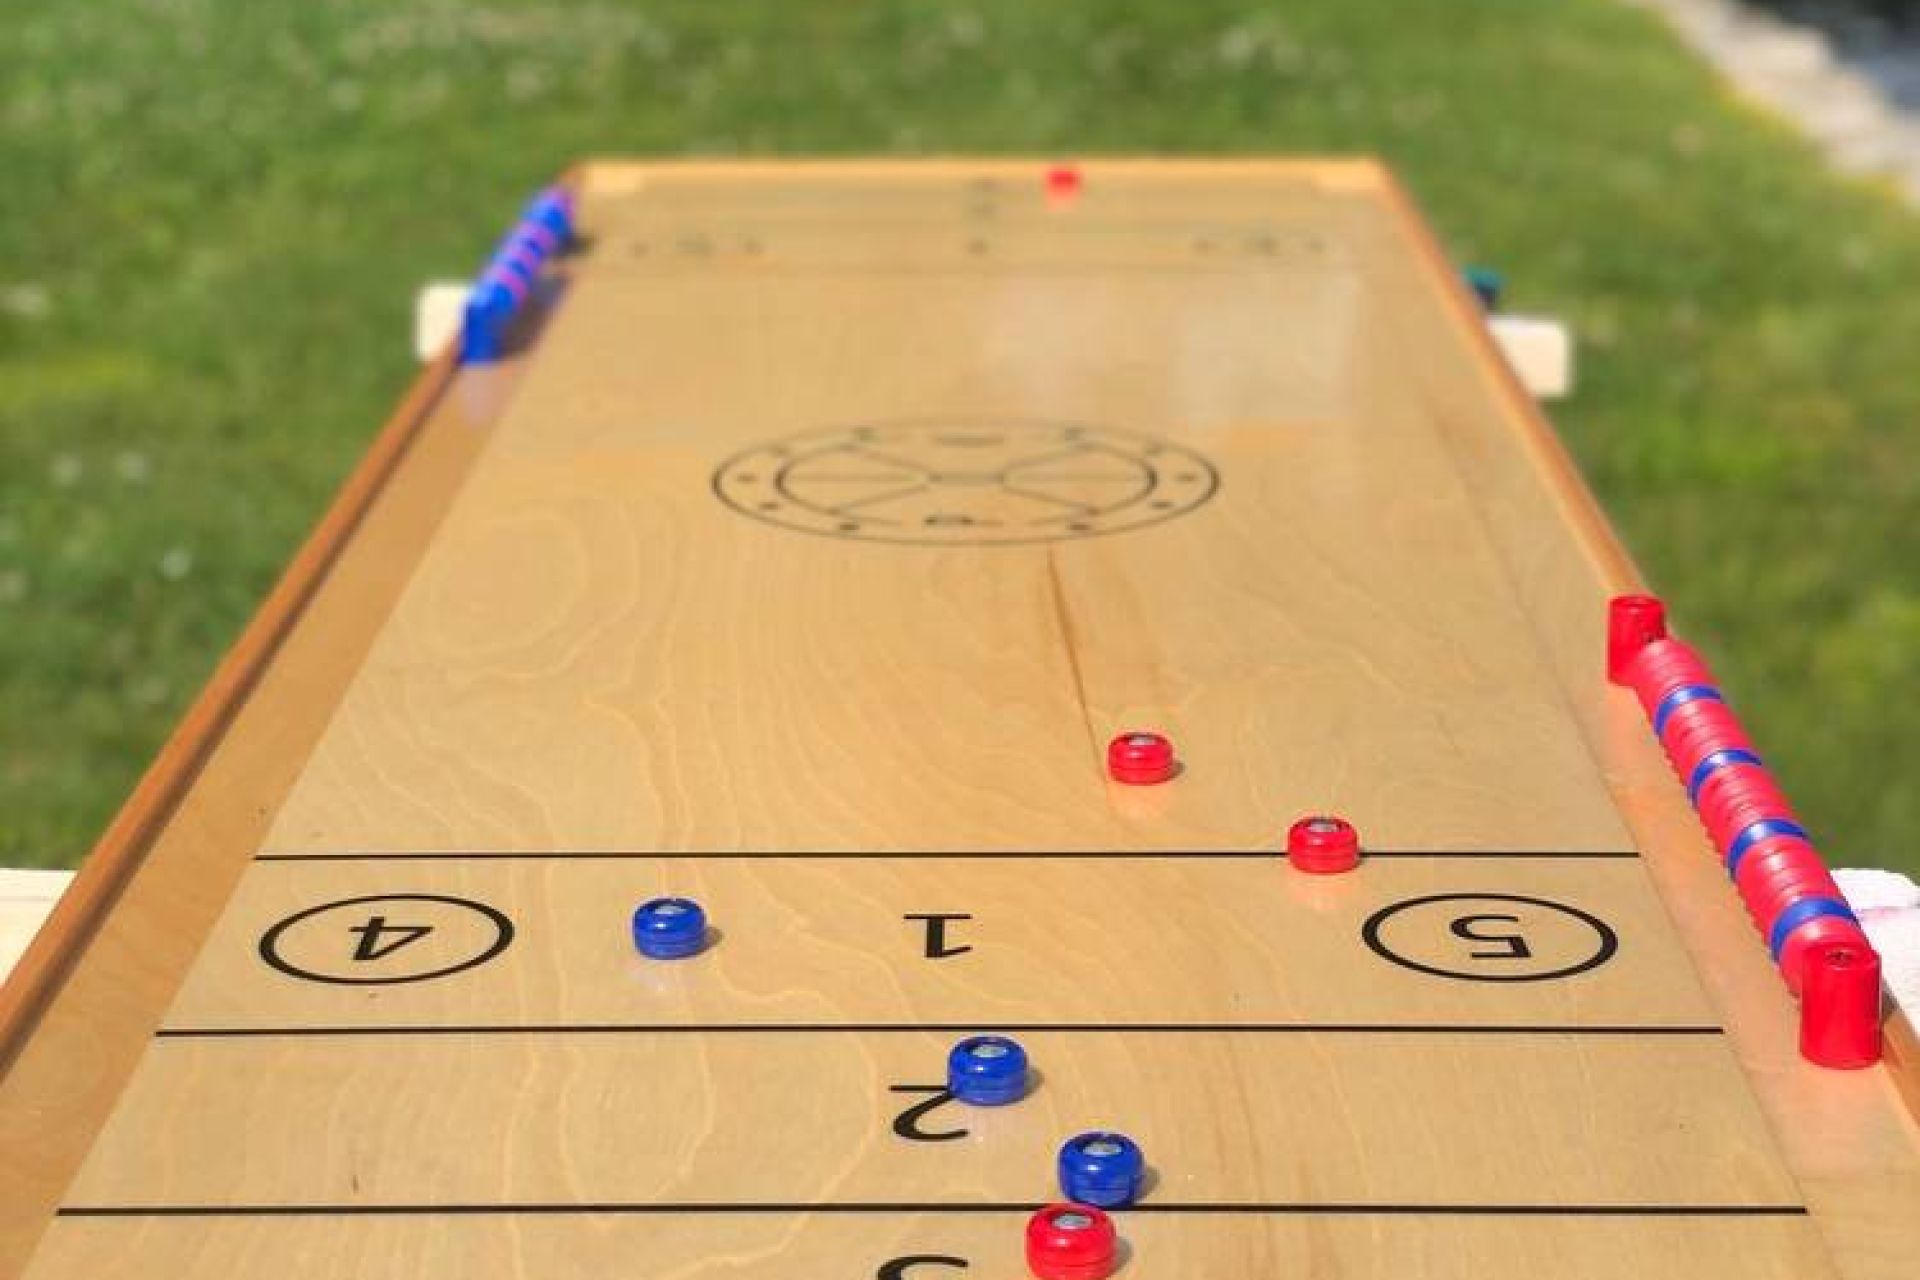 La table POK-Games avec 4 billes rouges et 4 billes bleues en jeu